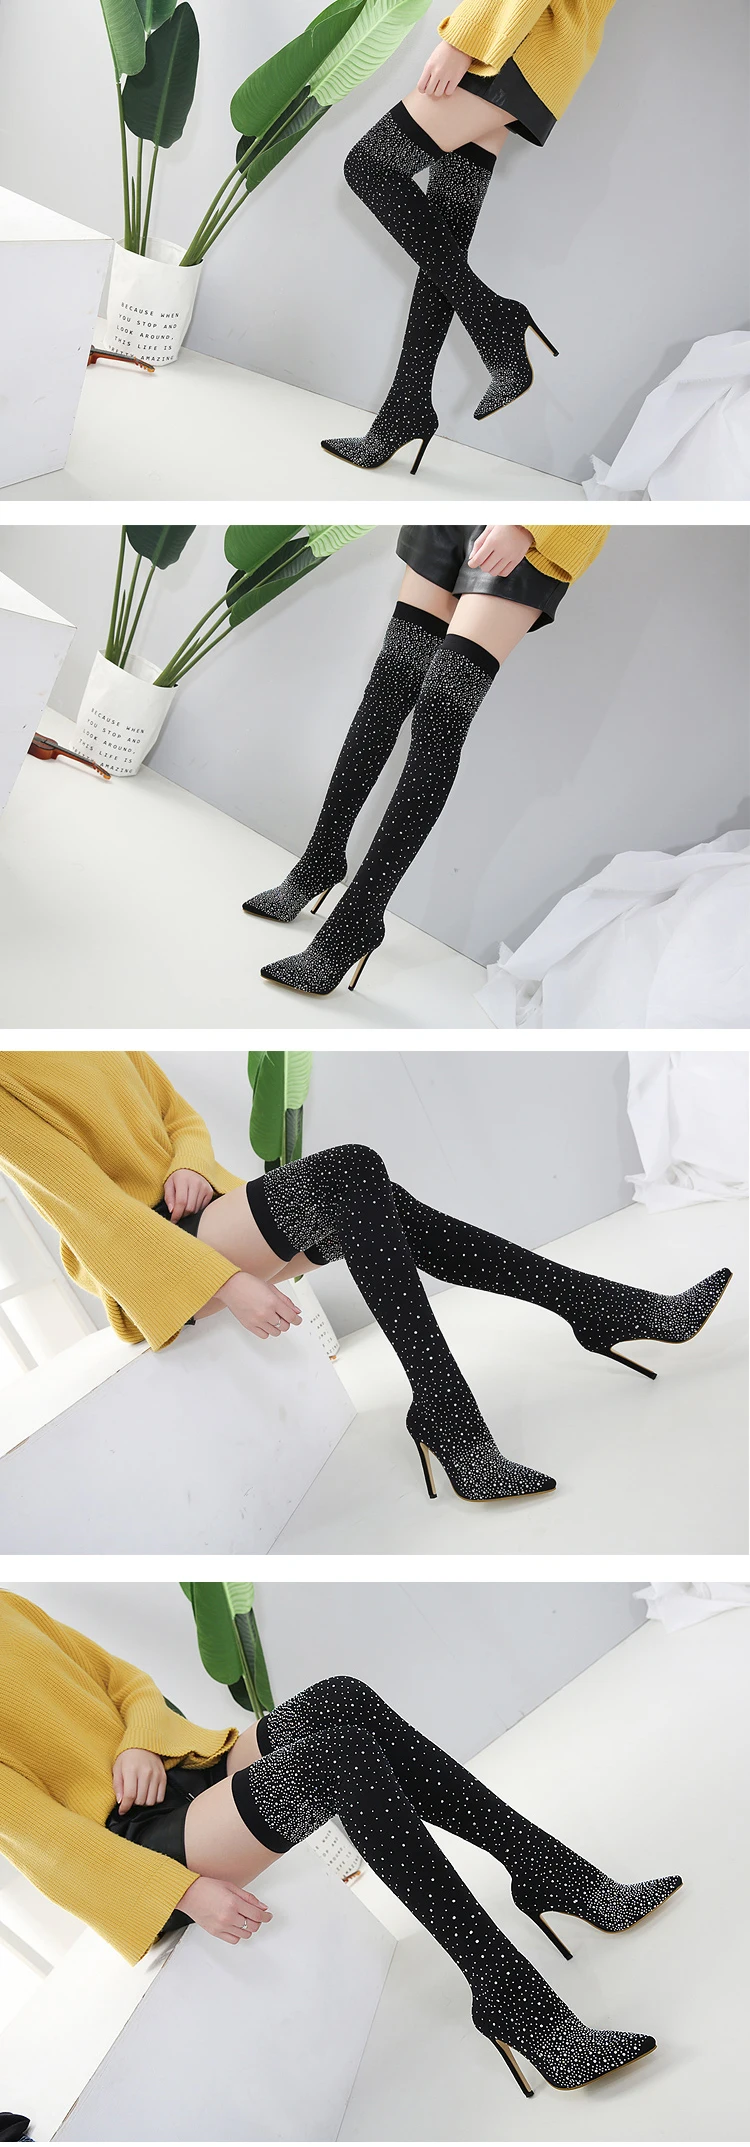 EilyKen/ г. Новые женские высокие сапоги до колена пикантные эластичные носки на высоком каблуке с острым носком, украшенные кристаллами женские сапоги размер 42, 43